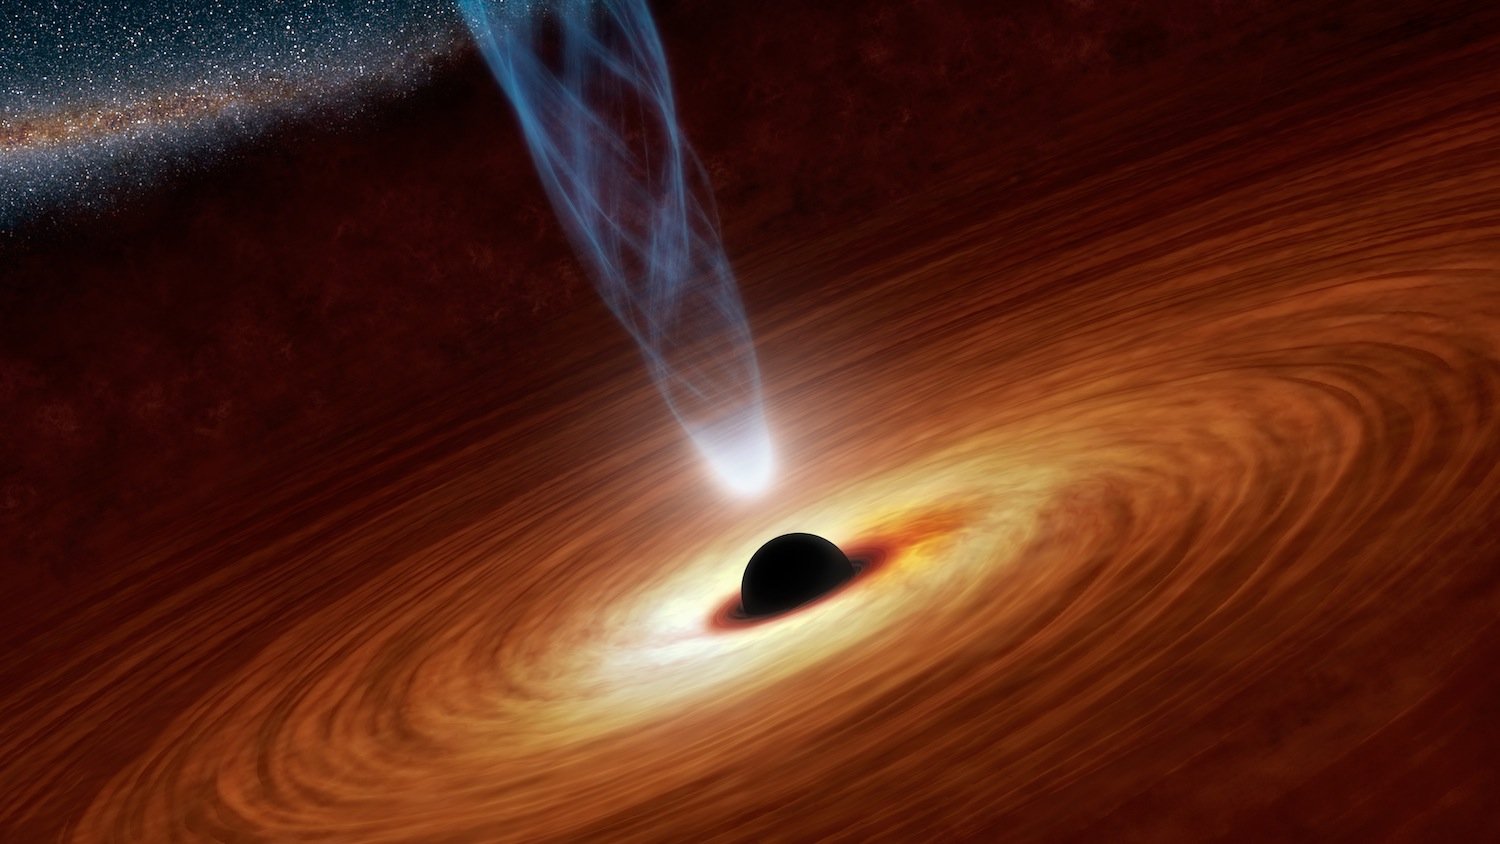 Schwarze Löcher entstehen aus massereichen Sternen und wachsen, weil ihre starke Gravitationskraft umliegende Materie und Energie aufsaugt. 